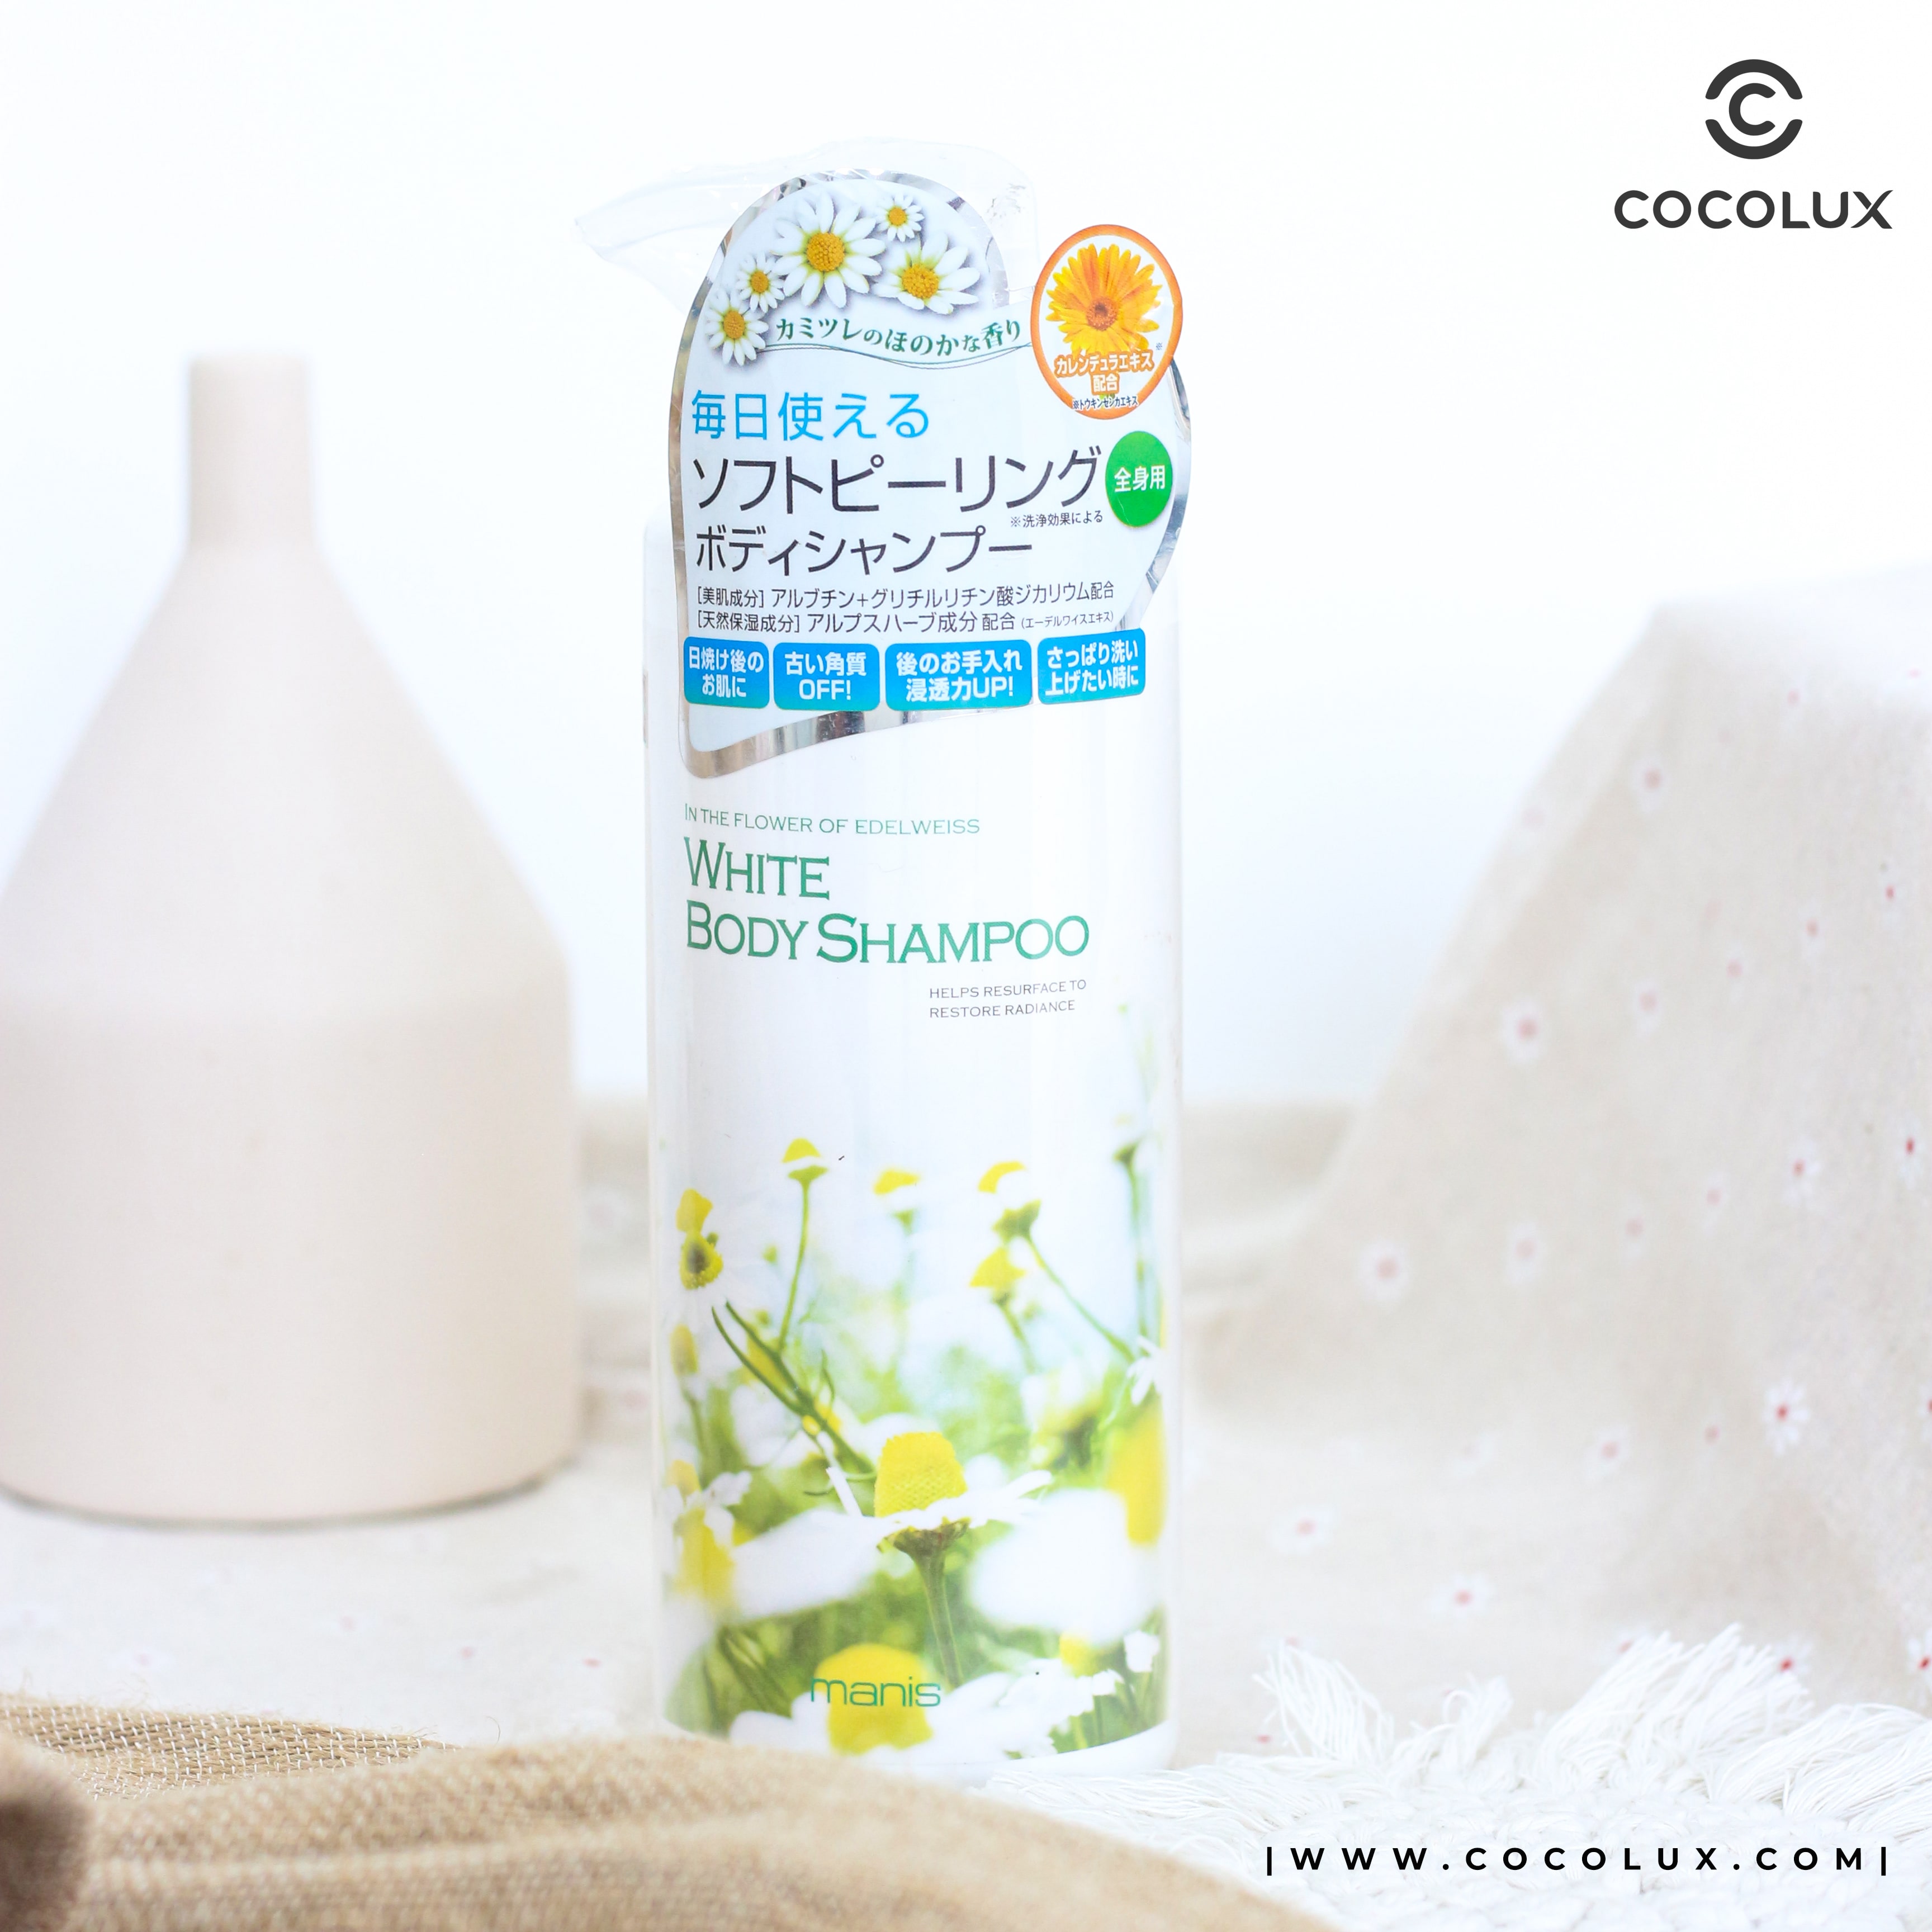 Sữa Tắm Manis White Body Shampoo Hoa Cúc Trắng Da 450ml